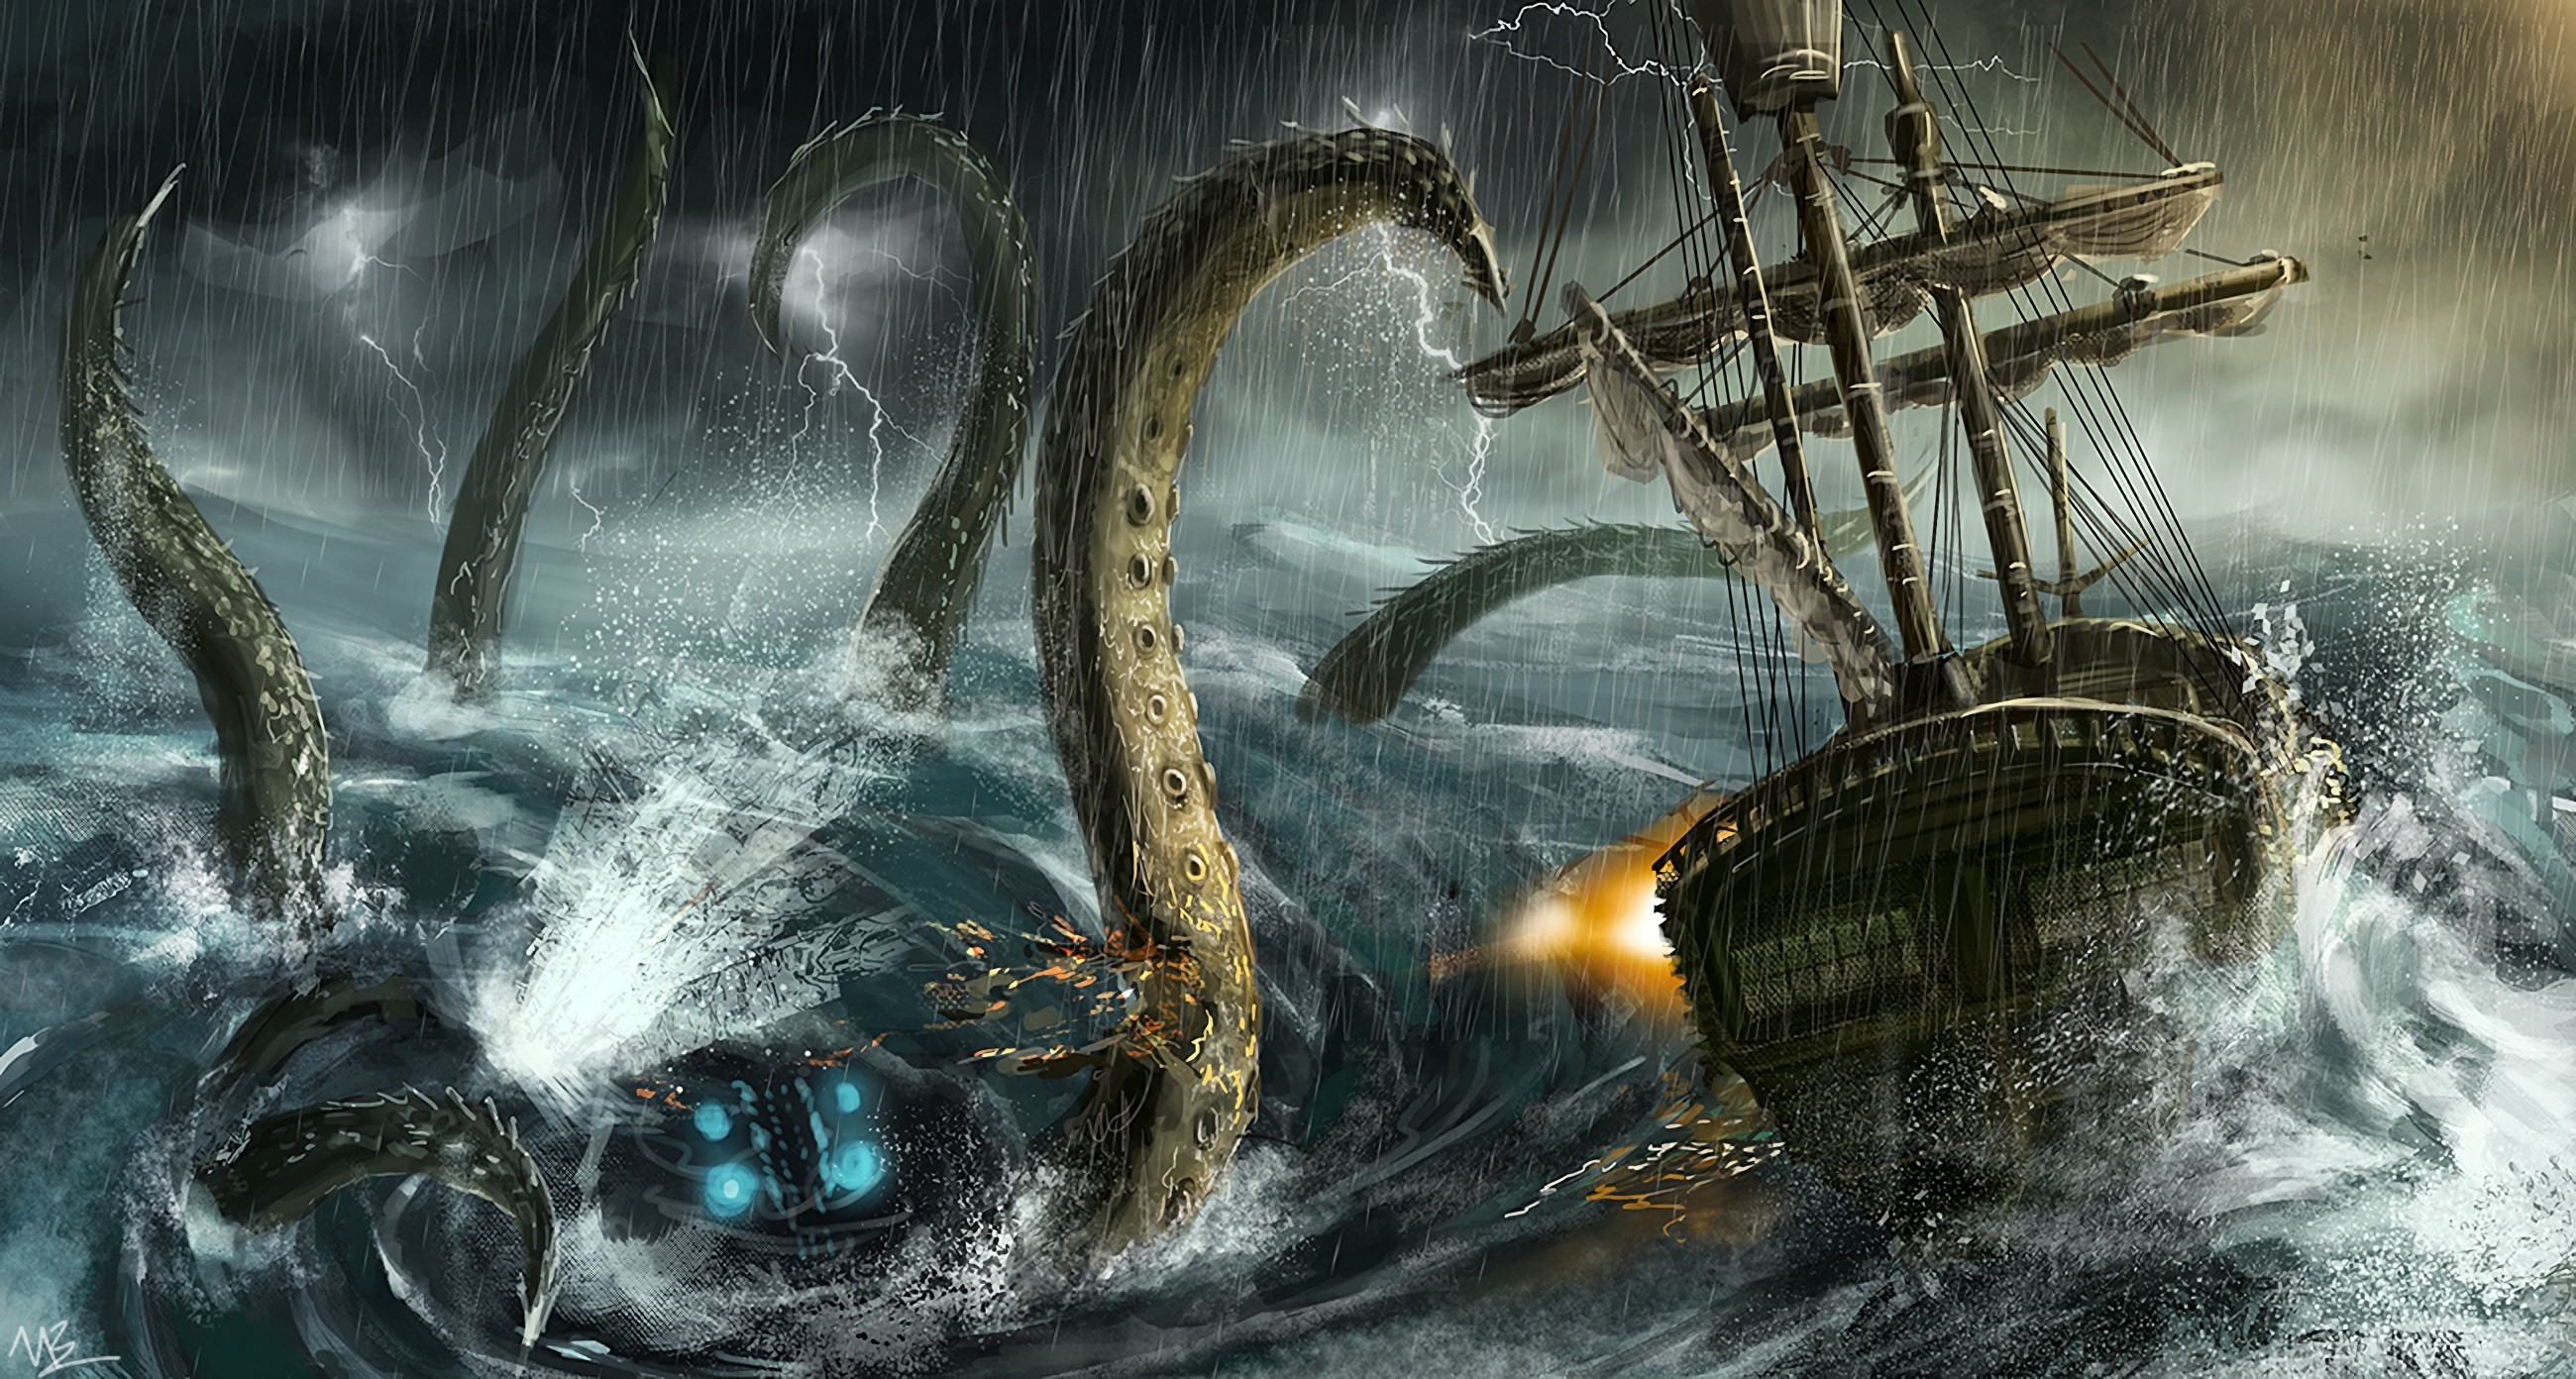 General 2600x1392 artwork fantasy art rain sea tentacles sea monsters sailing ship digital art